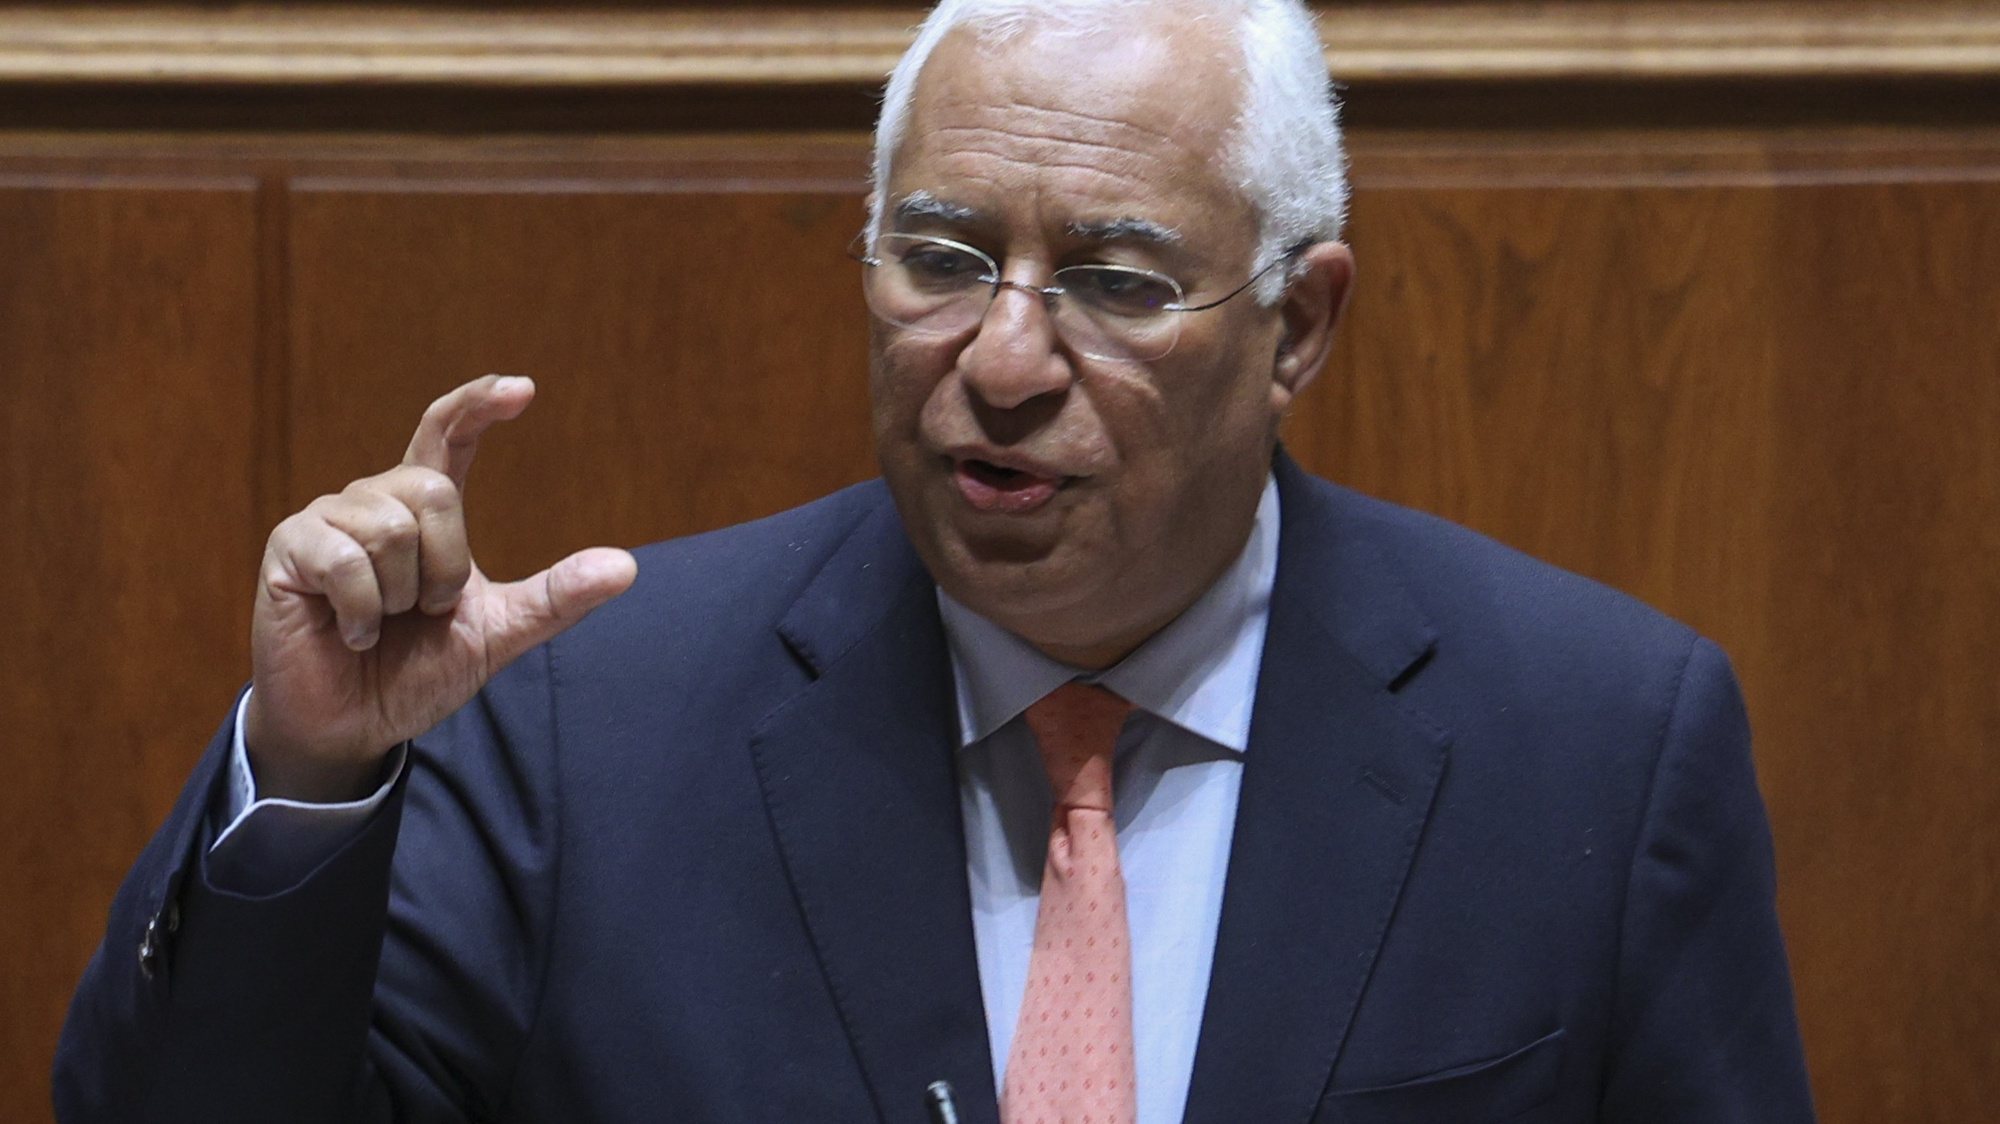 O primeiro-ministro, António Costa, intervém durante o debate parlamentar sobre política geral, na Assembleia da República, em Lisboa, 22 de março de 2023. ANTÓNIO COTRIM/LUSA